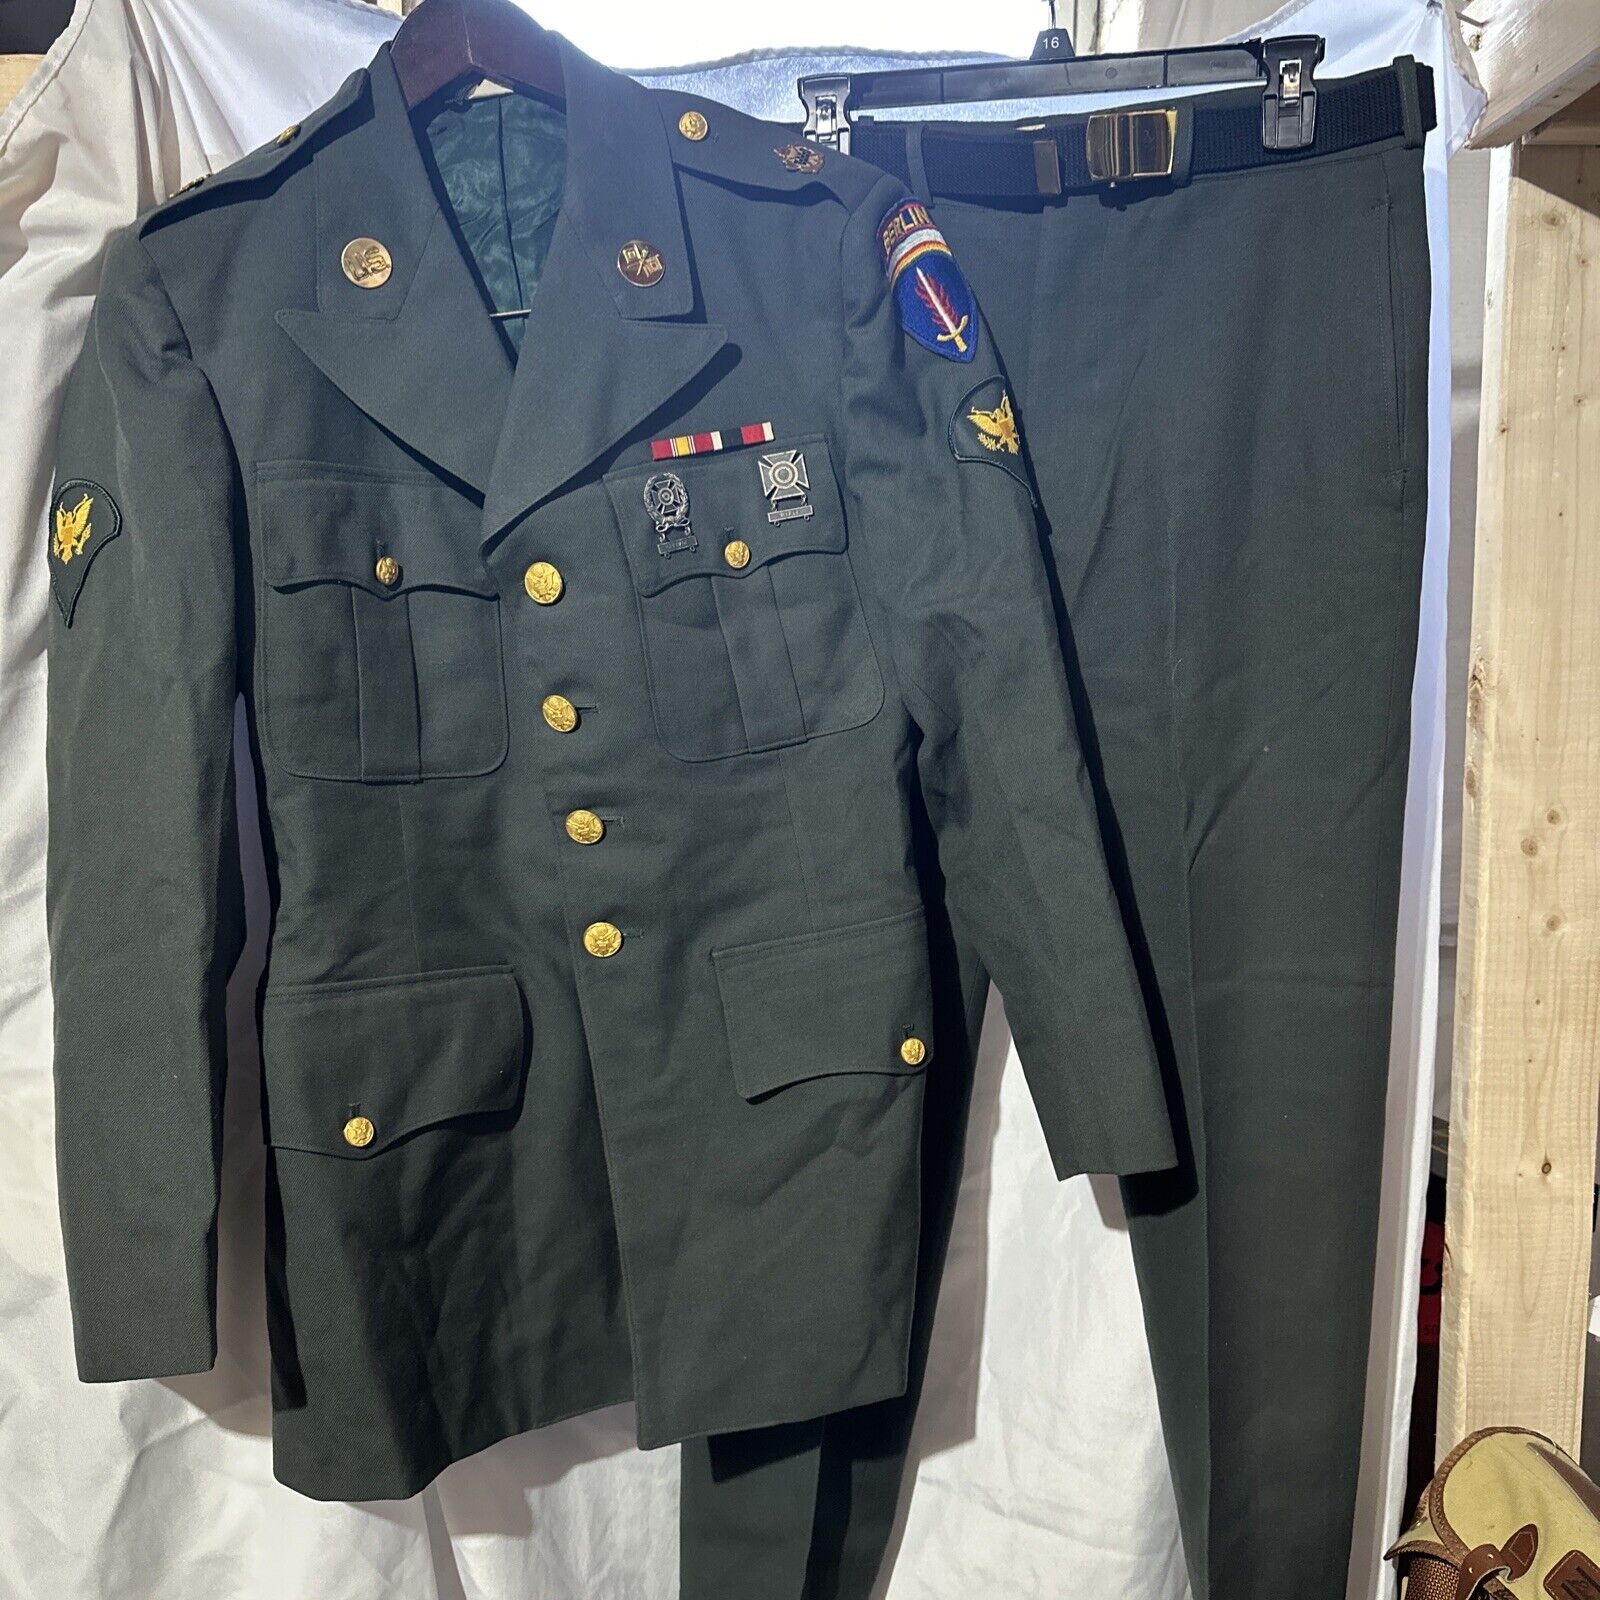 VTG NAMED US Army SPC Cold War/Vietnam Era Uniform Lot BERLIN 1969